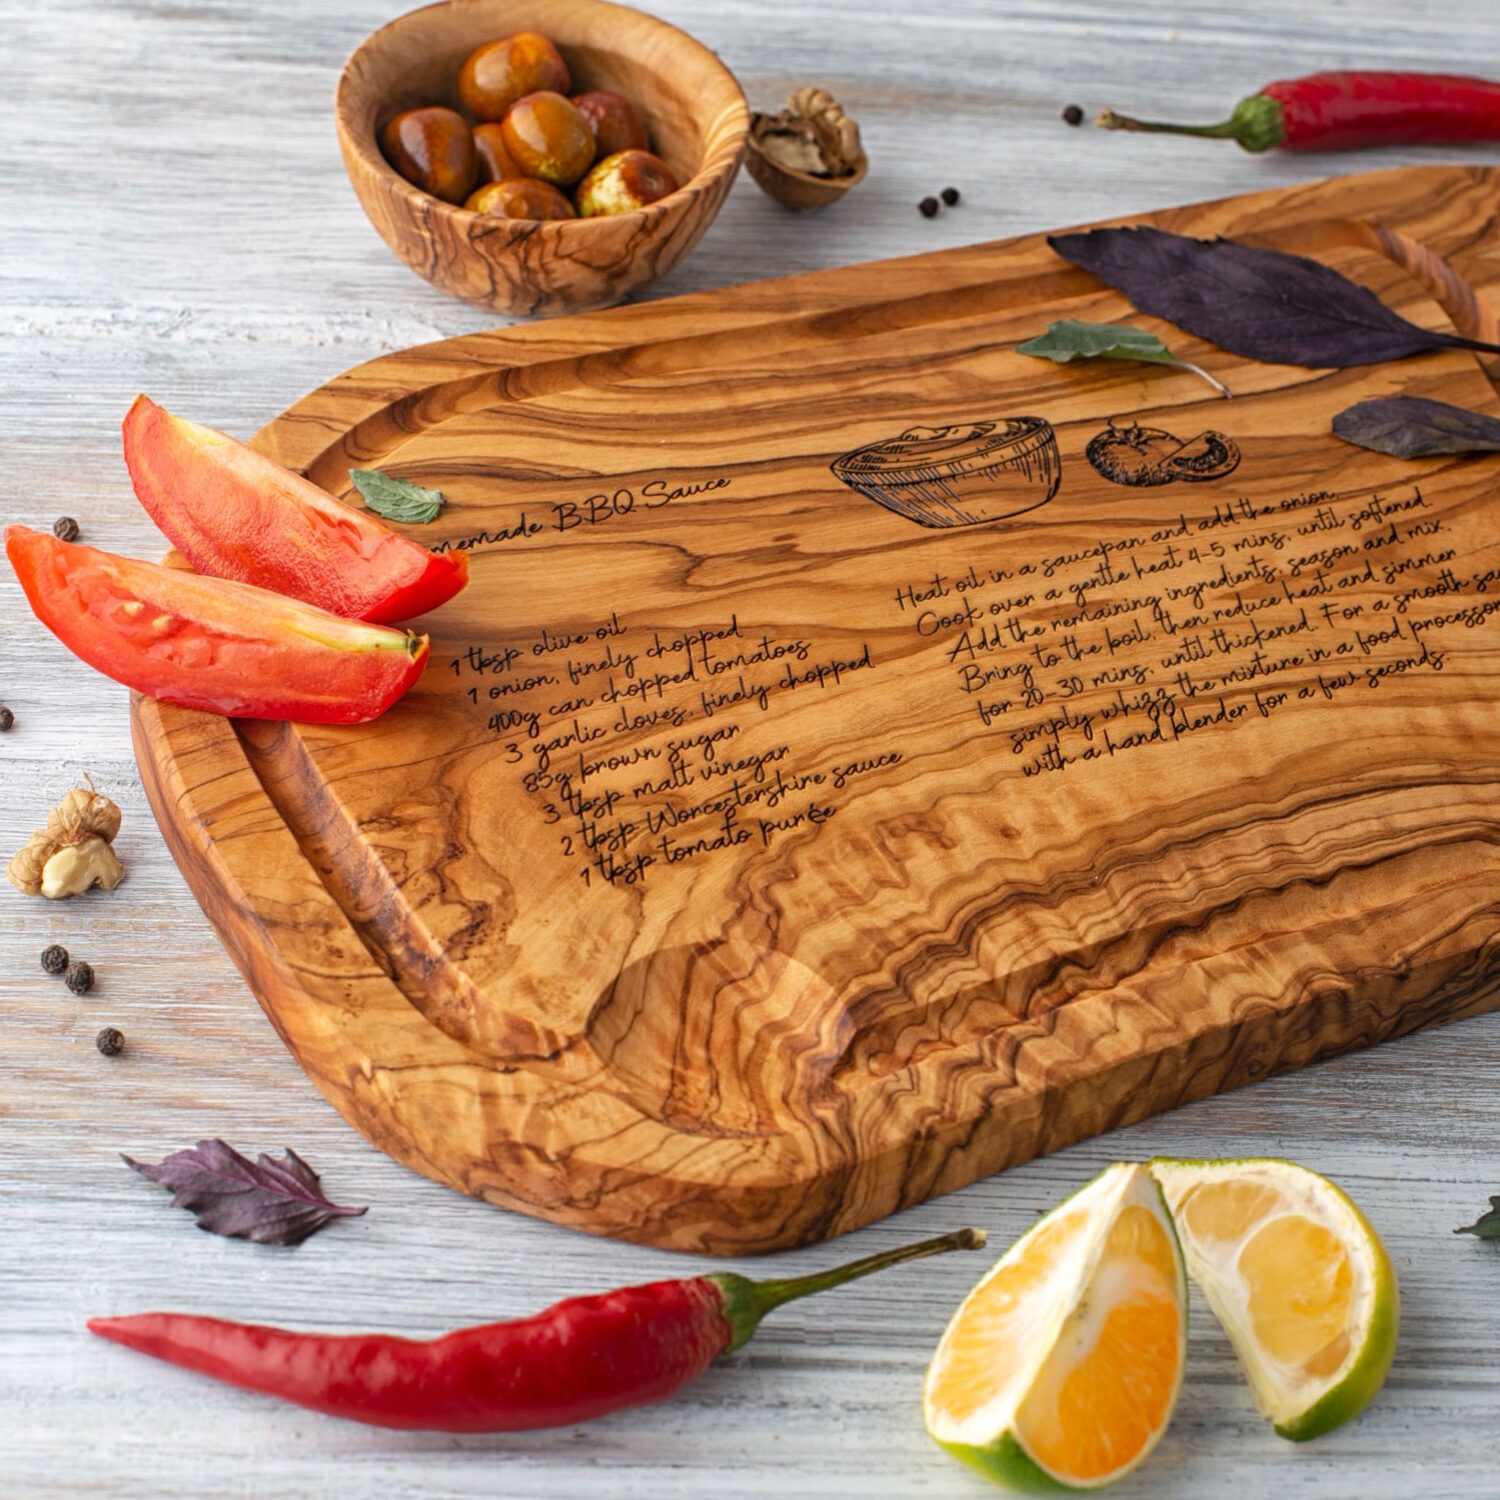 A wooden Steak Cutting Board with a recipe written on it.